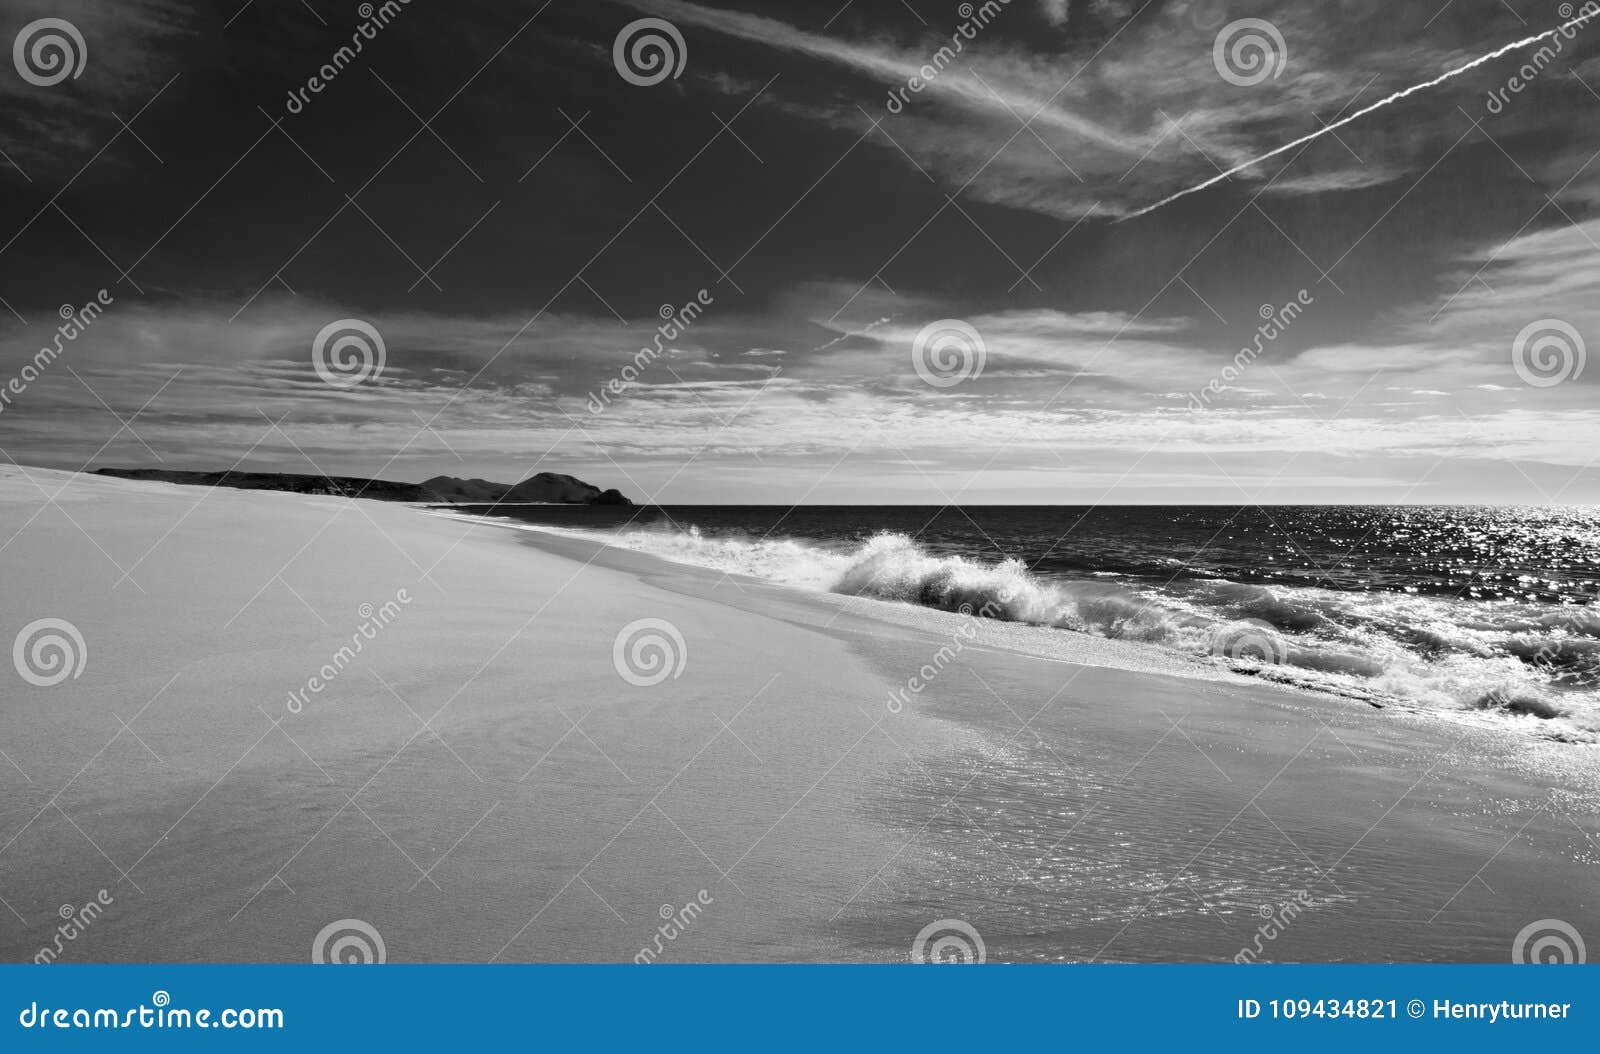 beach at todos santos central baja california mexico bcs - black and white